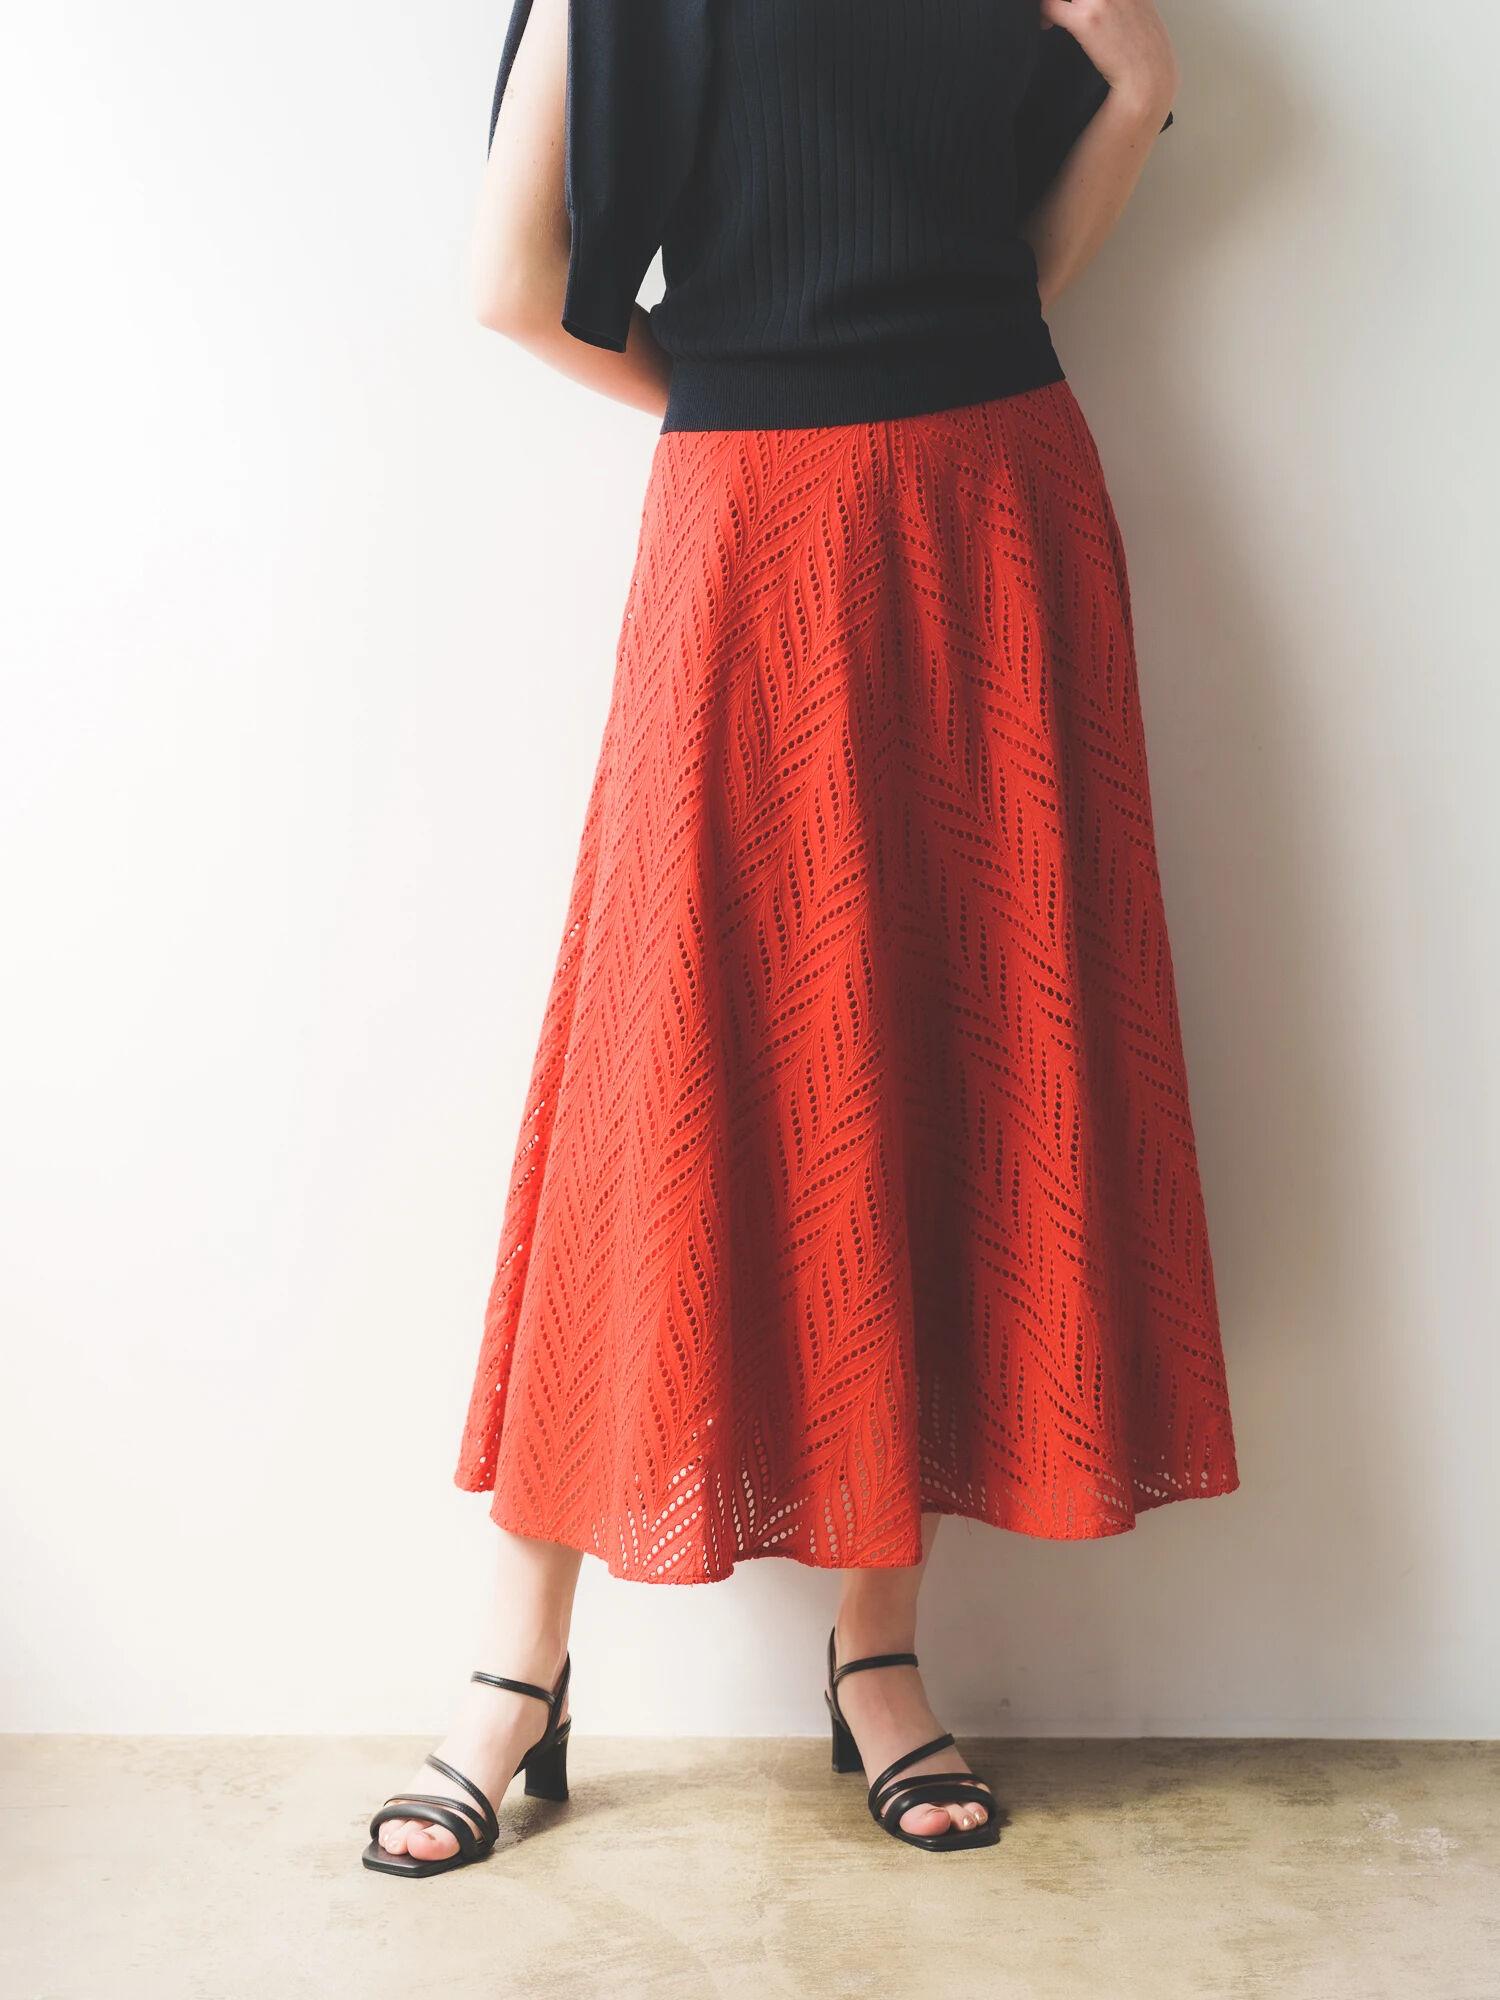 アイレット刺繍ロングフレアスカート / YECCA VECCA(イェッカヴェッカ)のスカート ファッション通販のSTRIPE CLUB